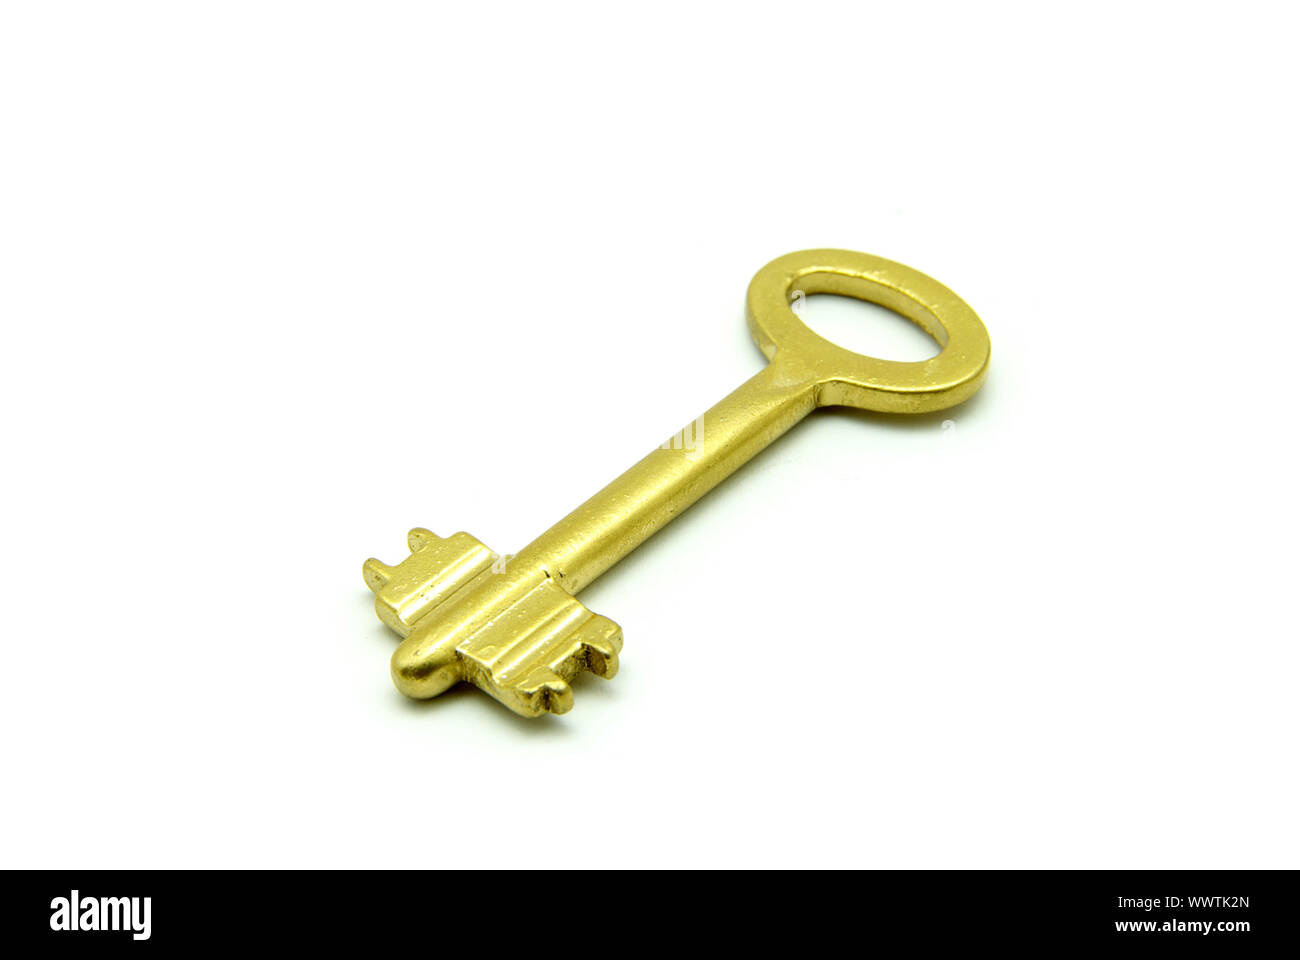 Với Old Gold Key, bạn có thể thấy được sự đơn giản mà vẫn rất sang trọng từ một chiếc chìa khóa. Đừng bỏ lỡ hình ảnh này nhé!